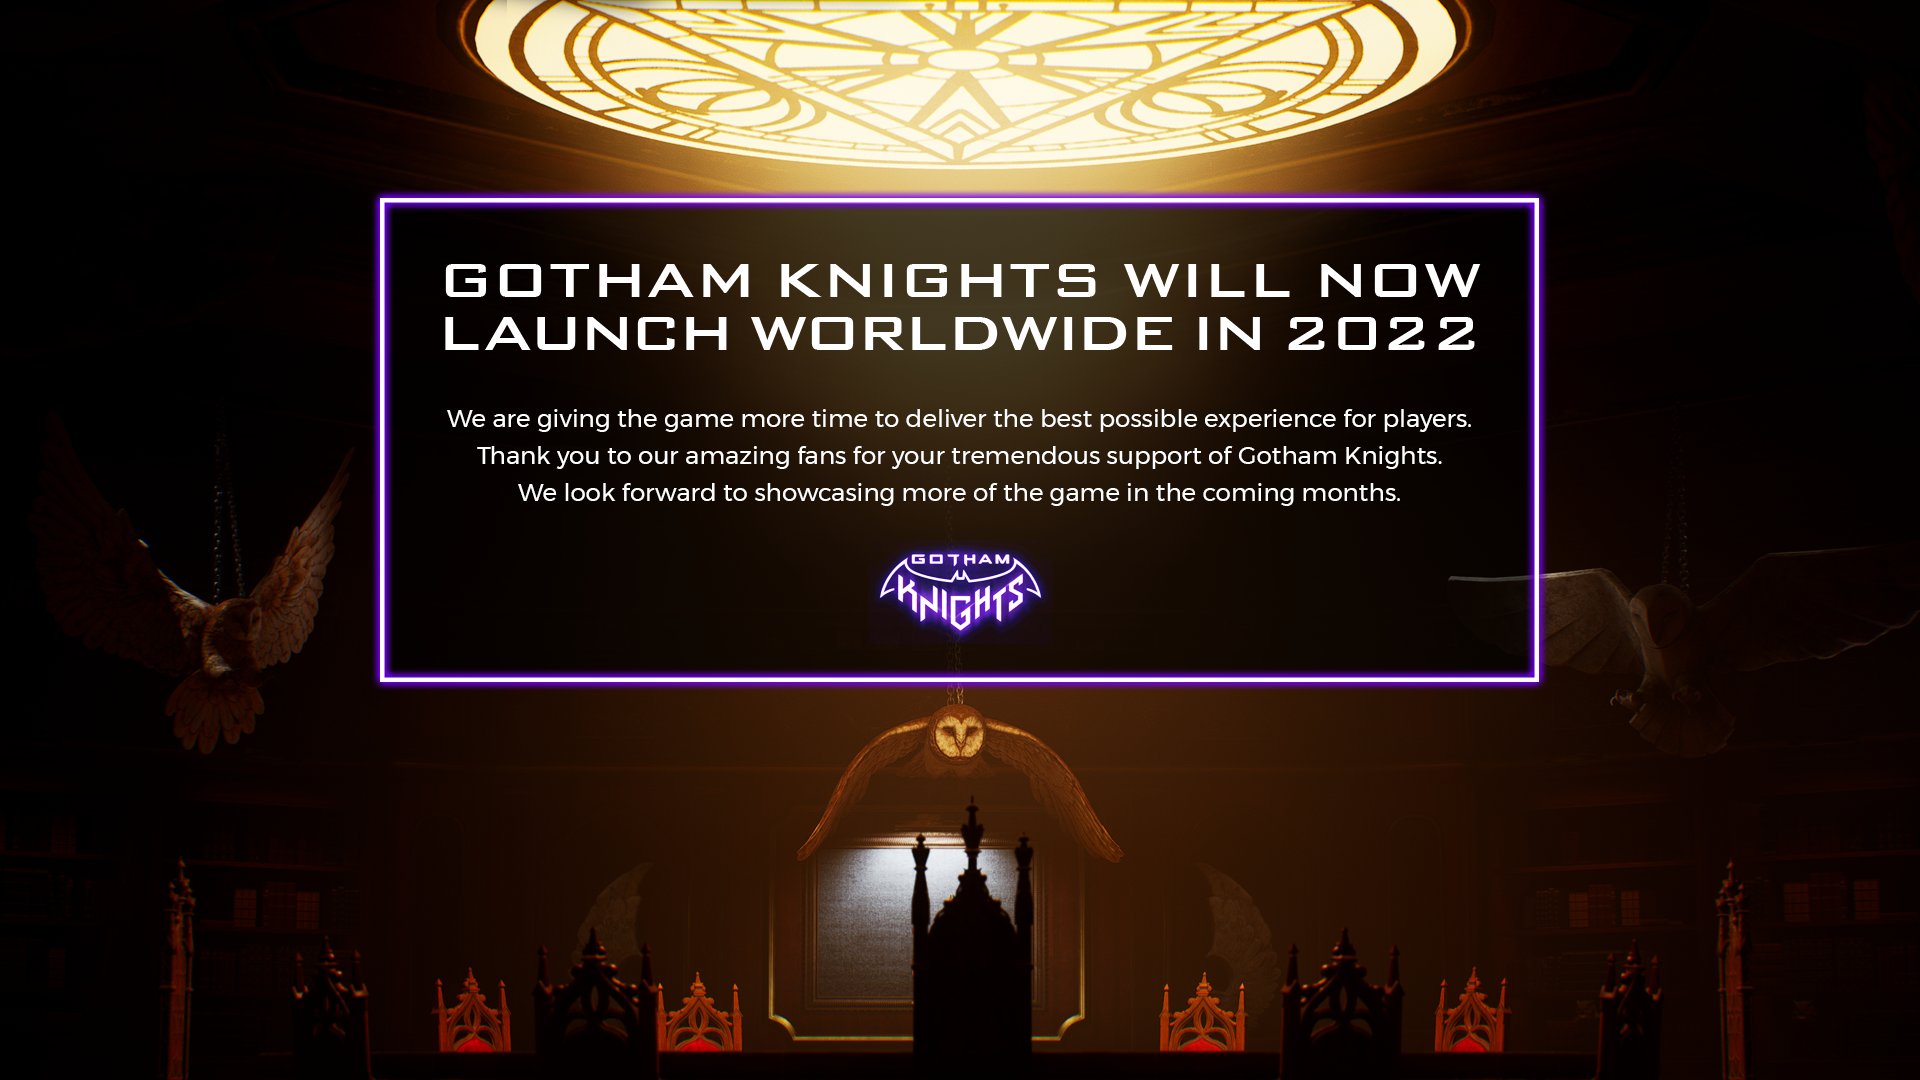 Разработчикам нужно больше времени, чтобы доделать проект / фото twitter.com/GothamKnights